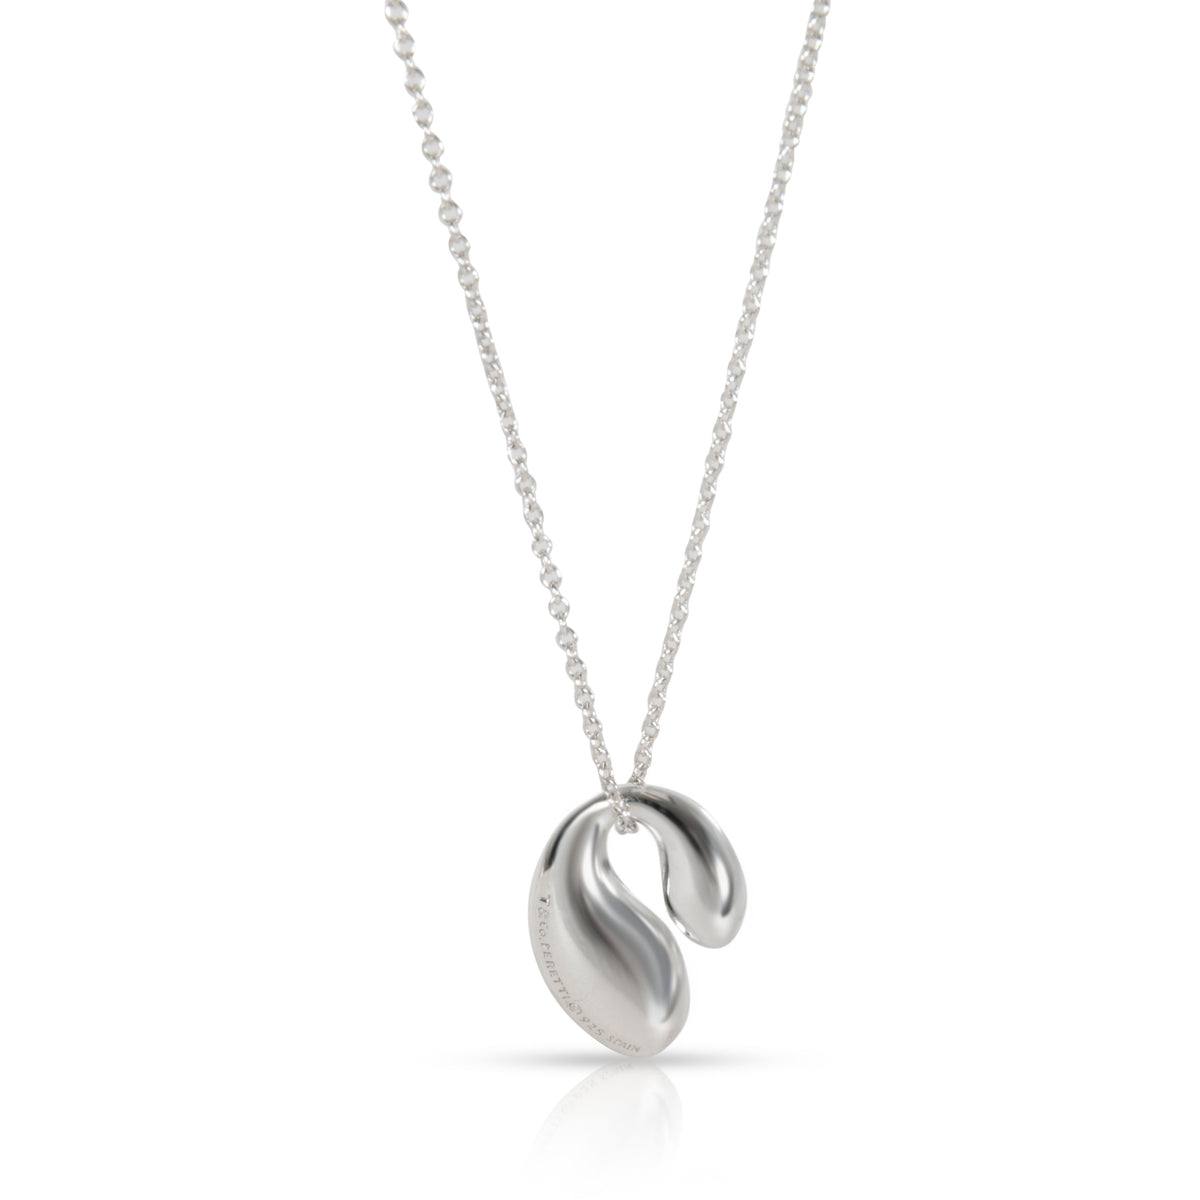 Tiffany & Co. Elsa Peretti Double Teardrop Necklace in Sterling Silver